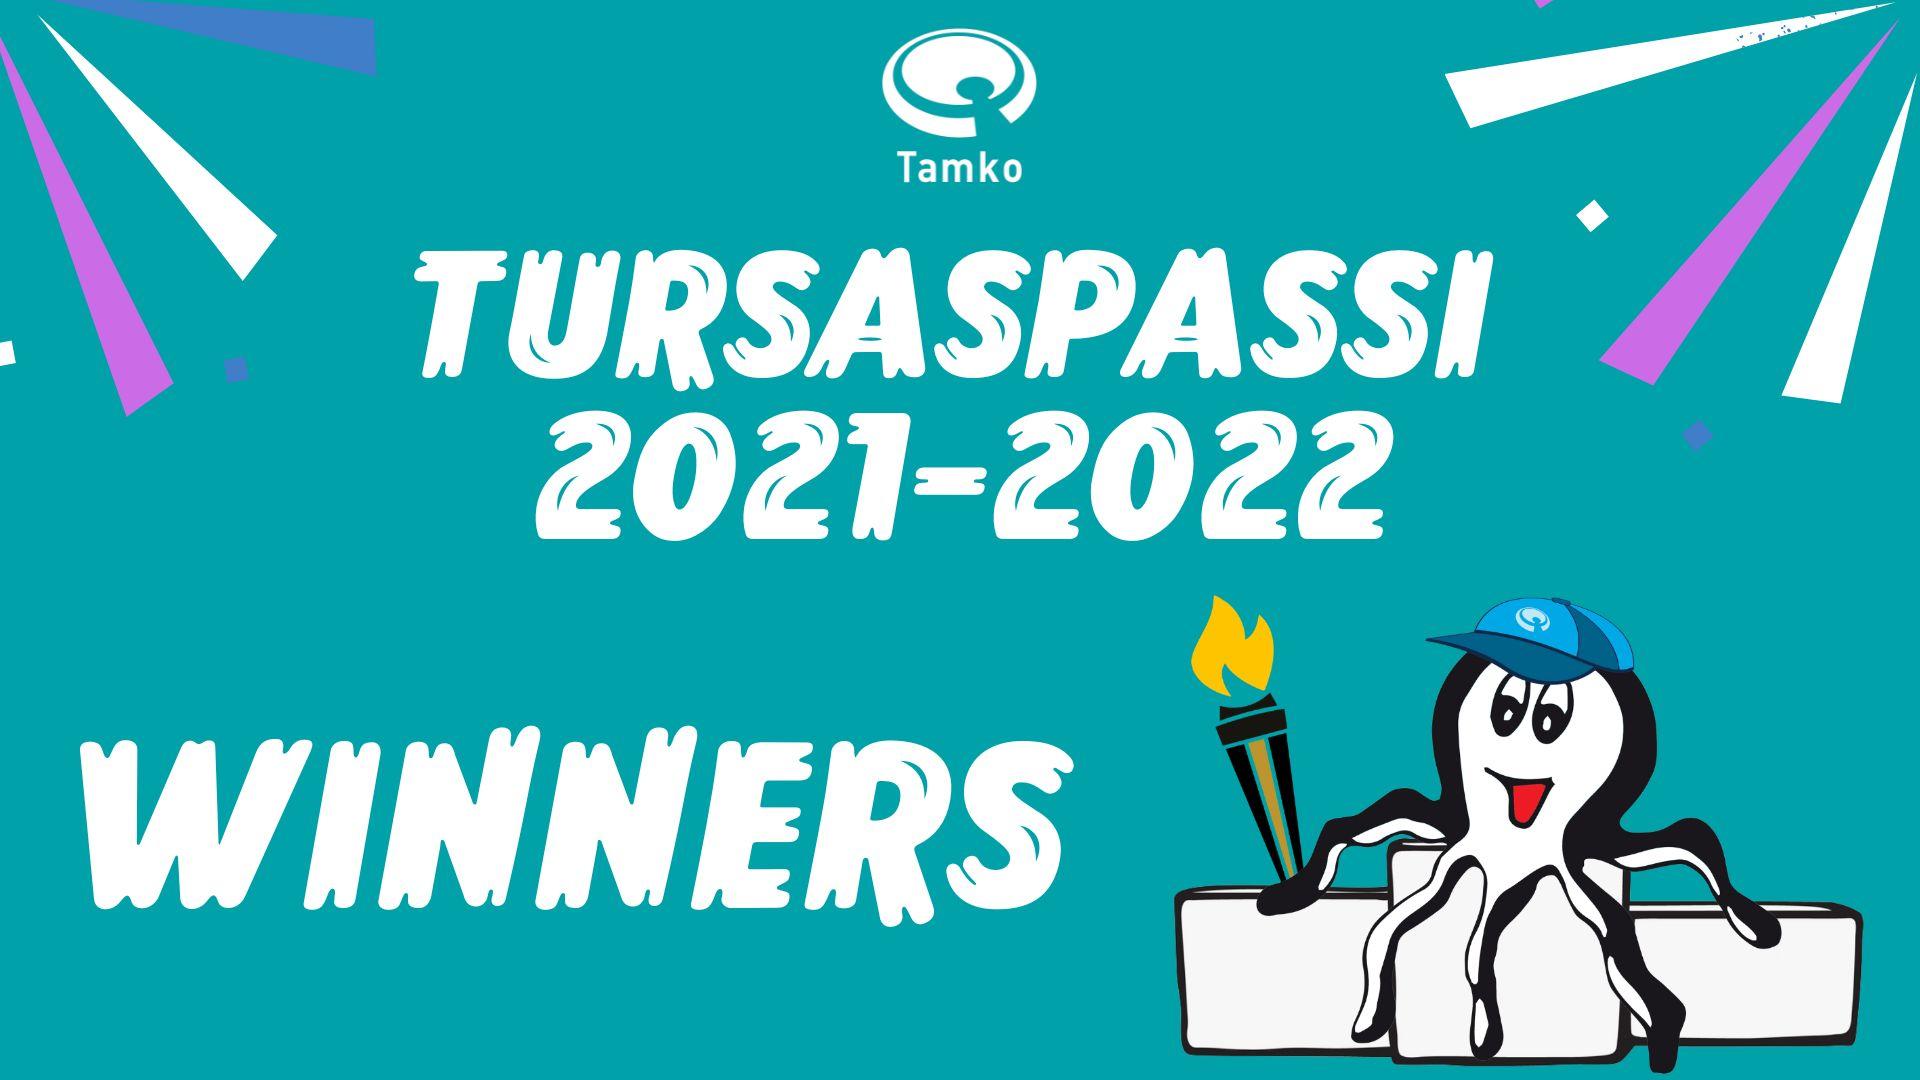 Tursaspassi 2021-2022 winners